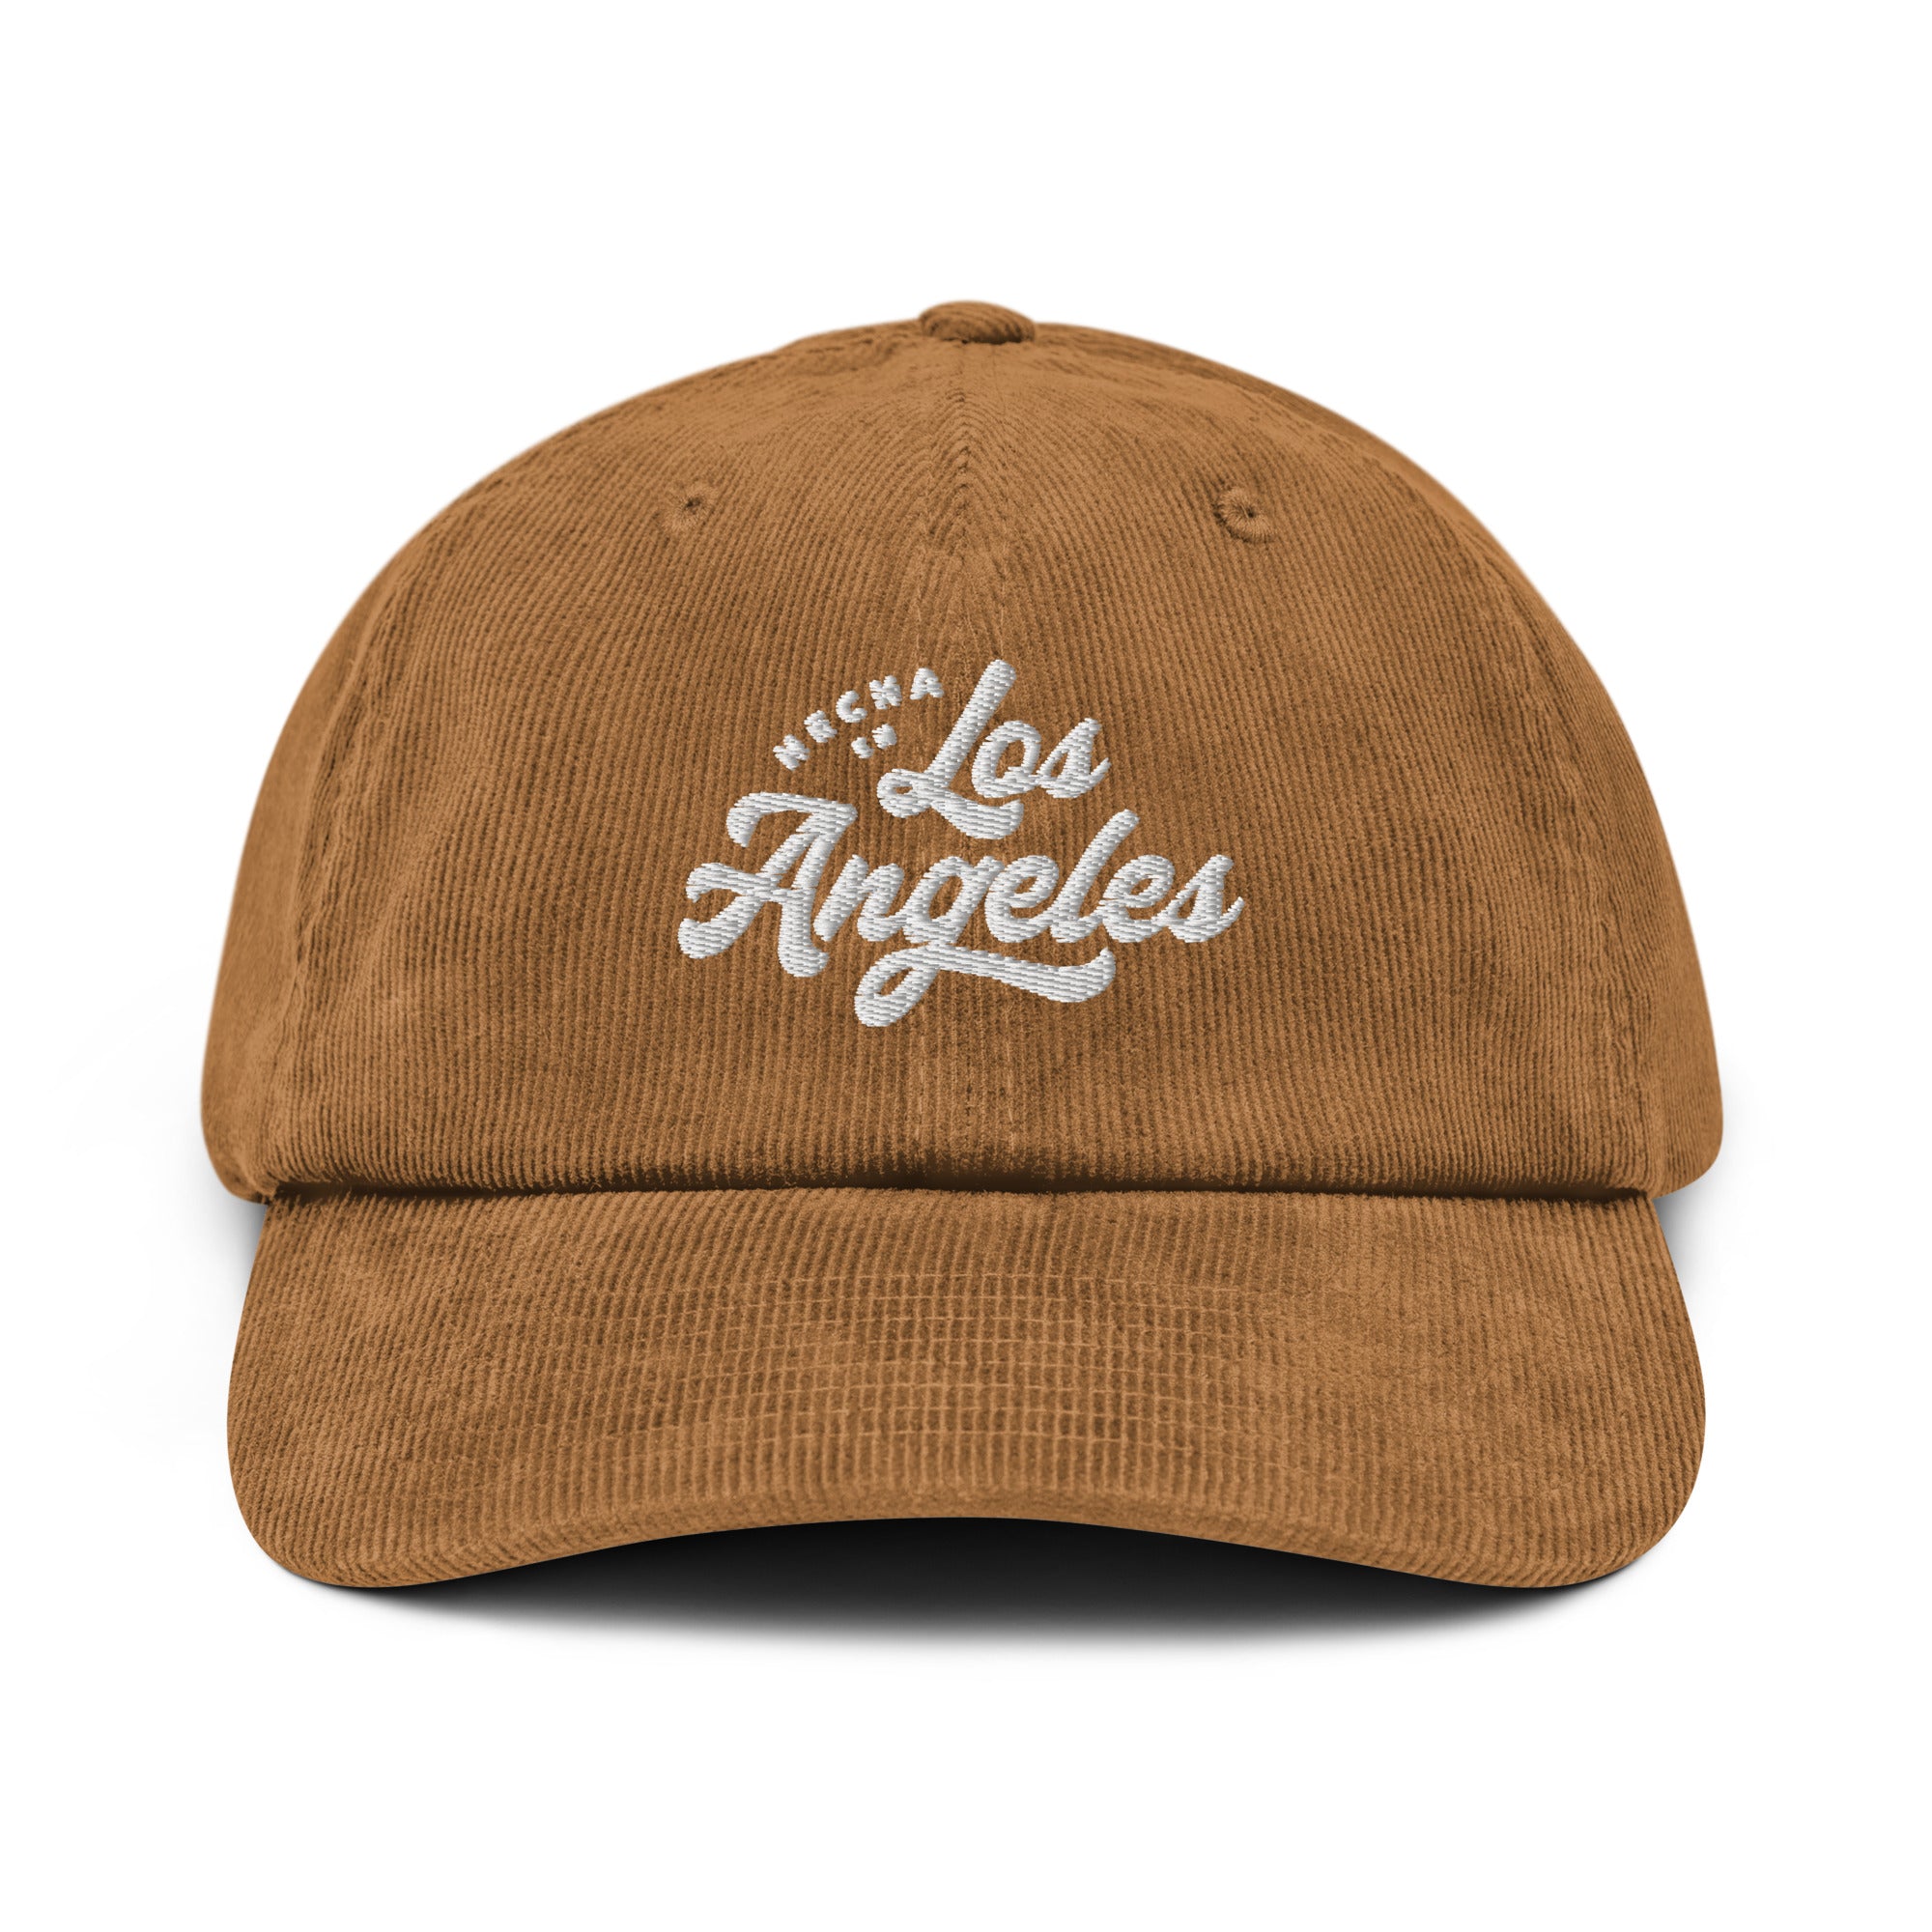 Hecha En Los Angeles Corduroy hat